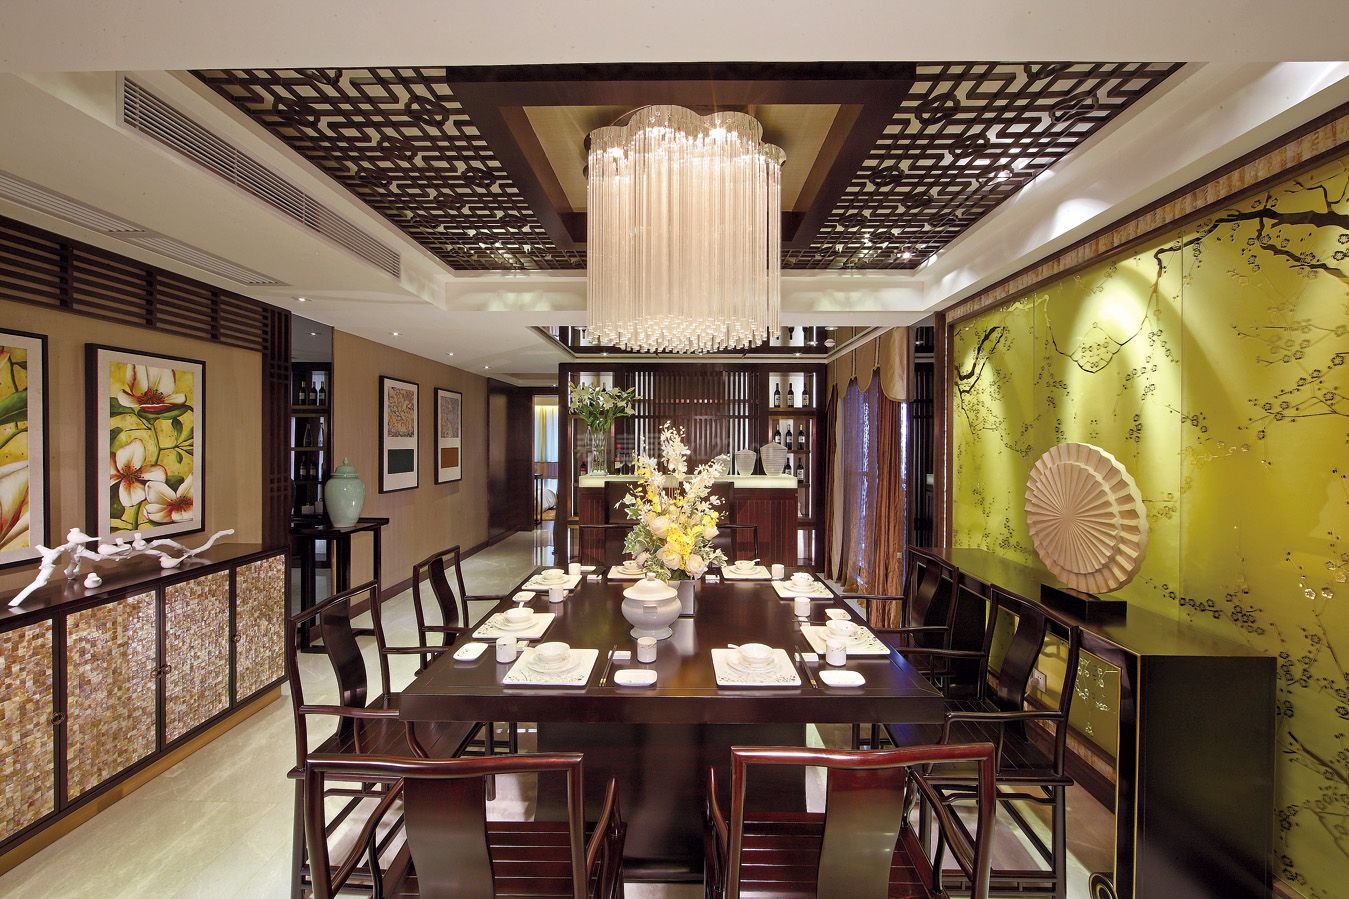 中式风格餐厅装修设计 2020中式风格餐厅家具图片